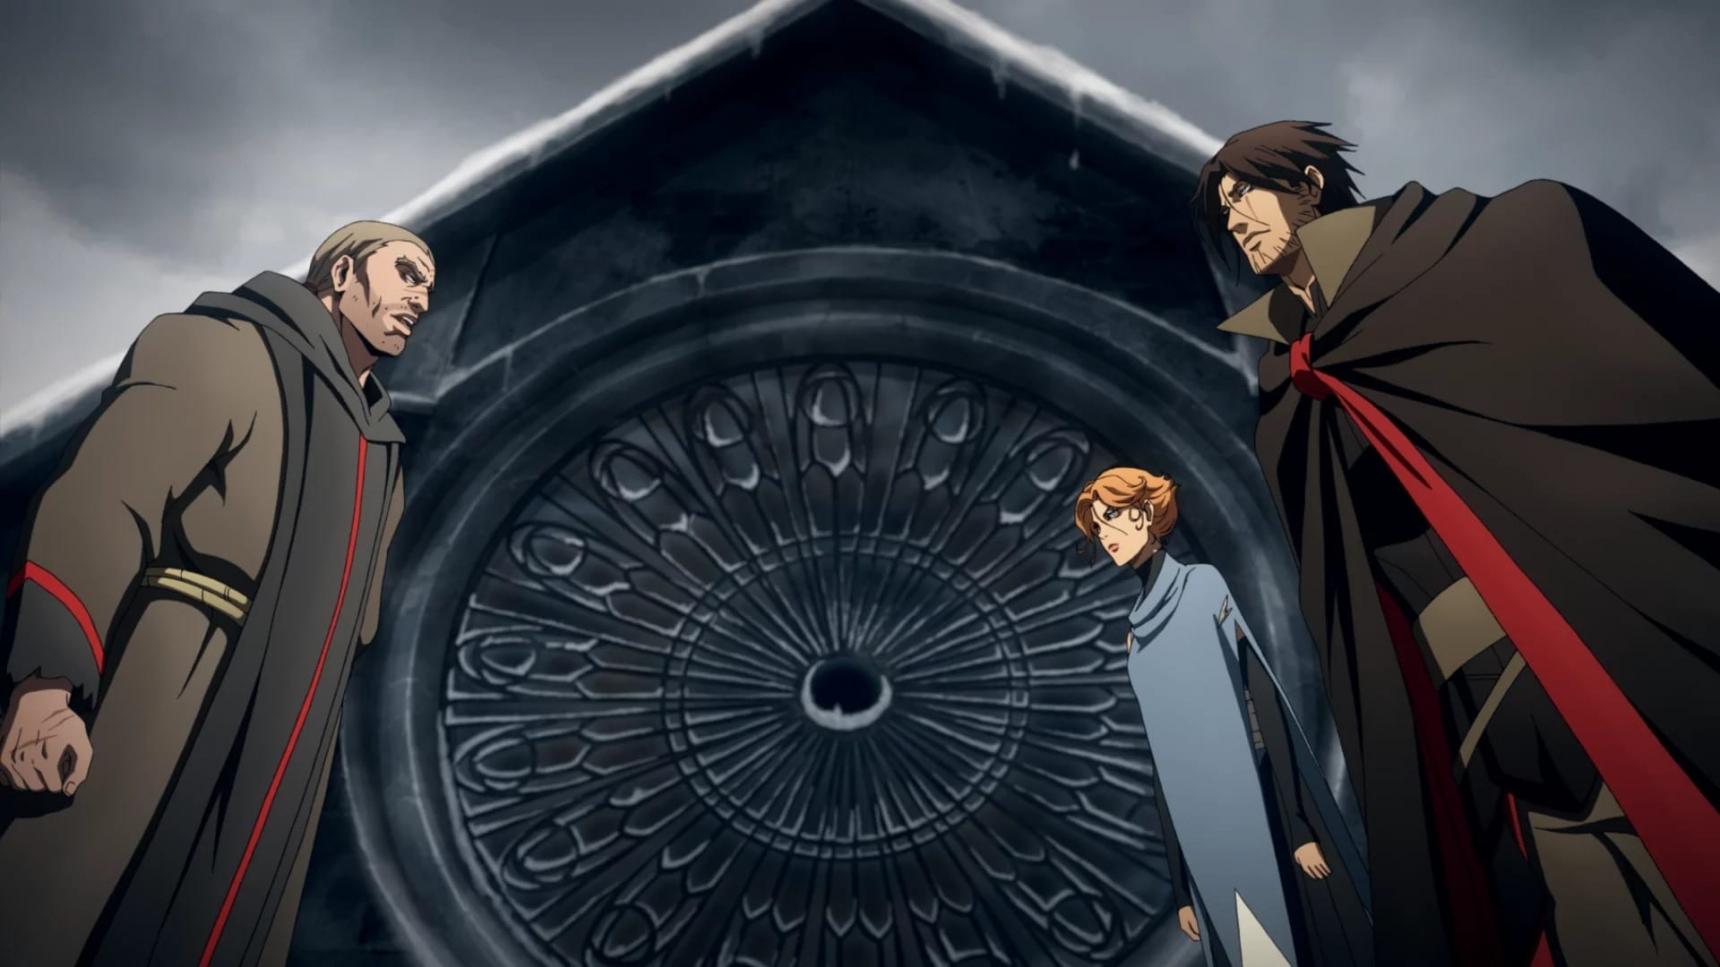 Poster del episodio 4 de Castlevania online